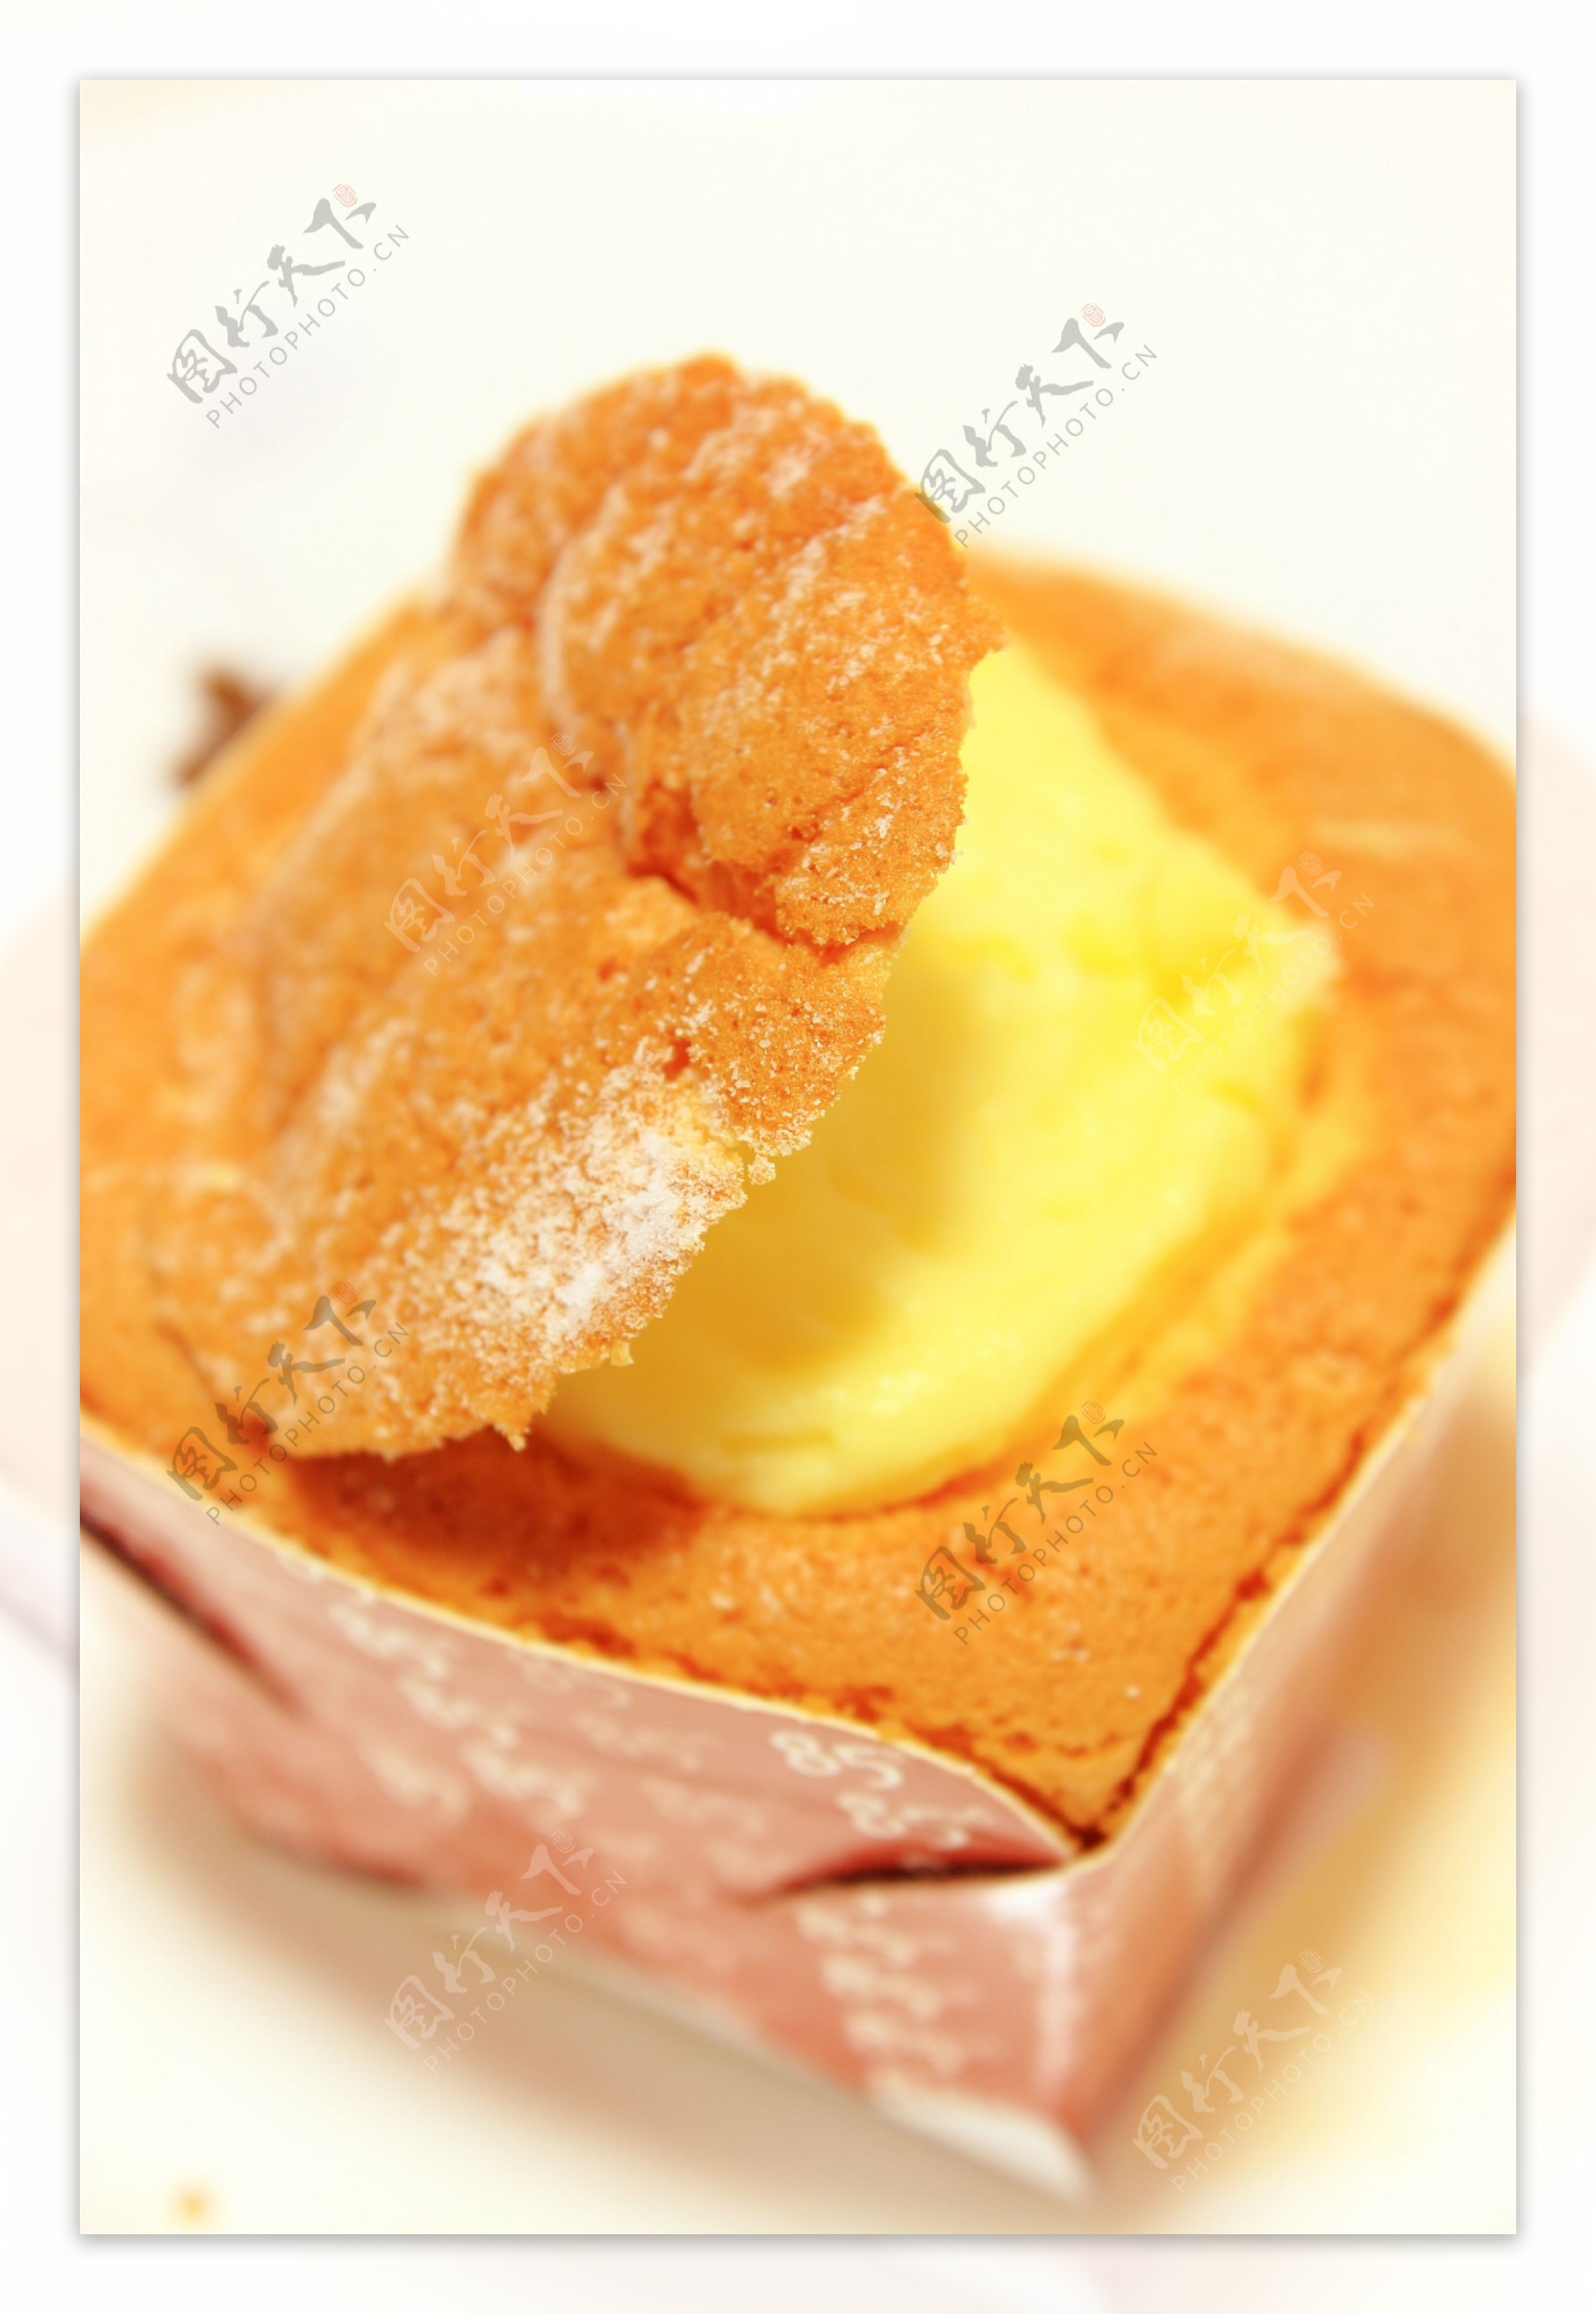 北海道蛋糕图片